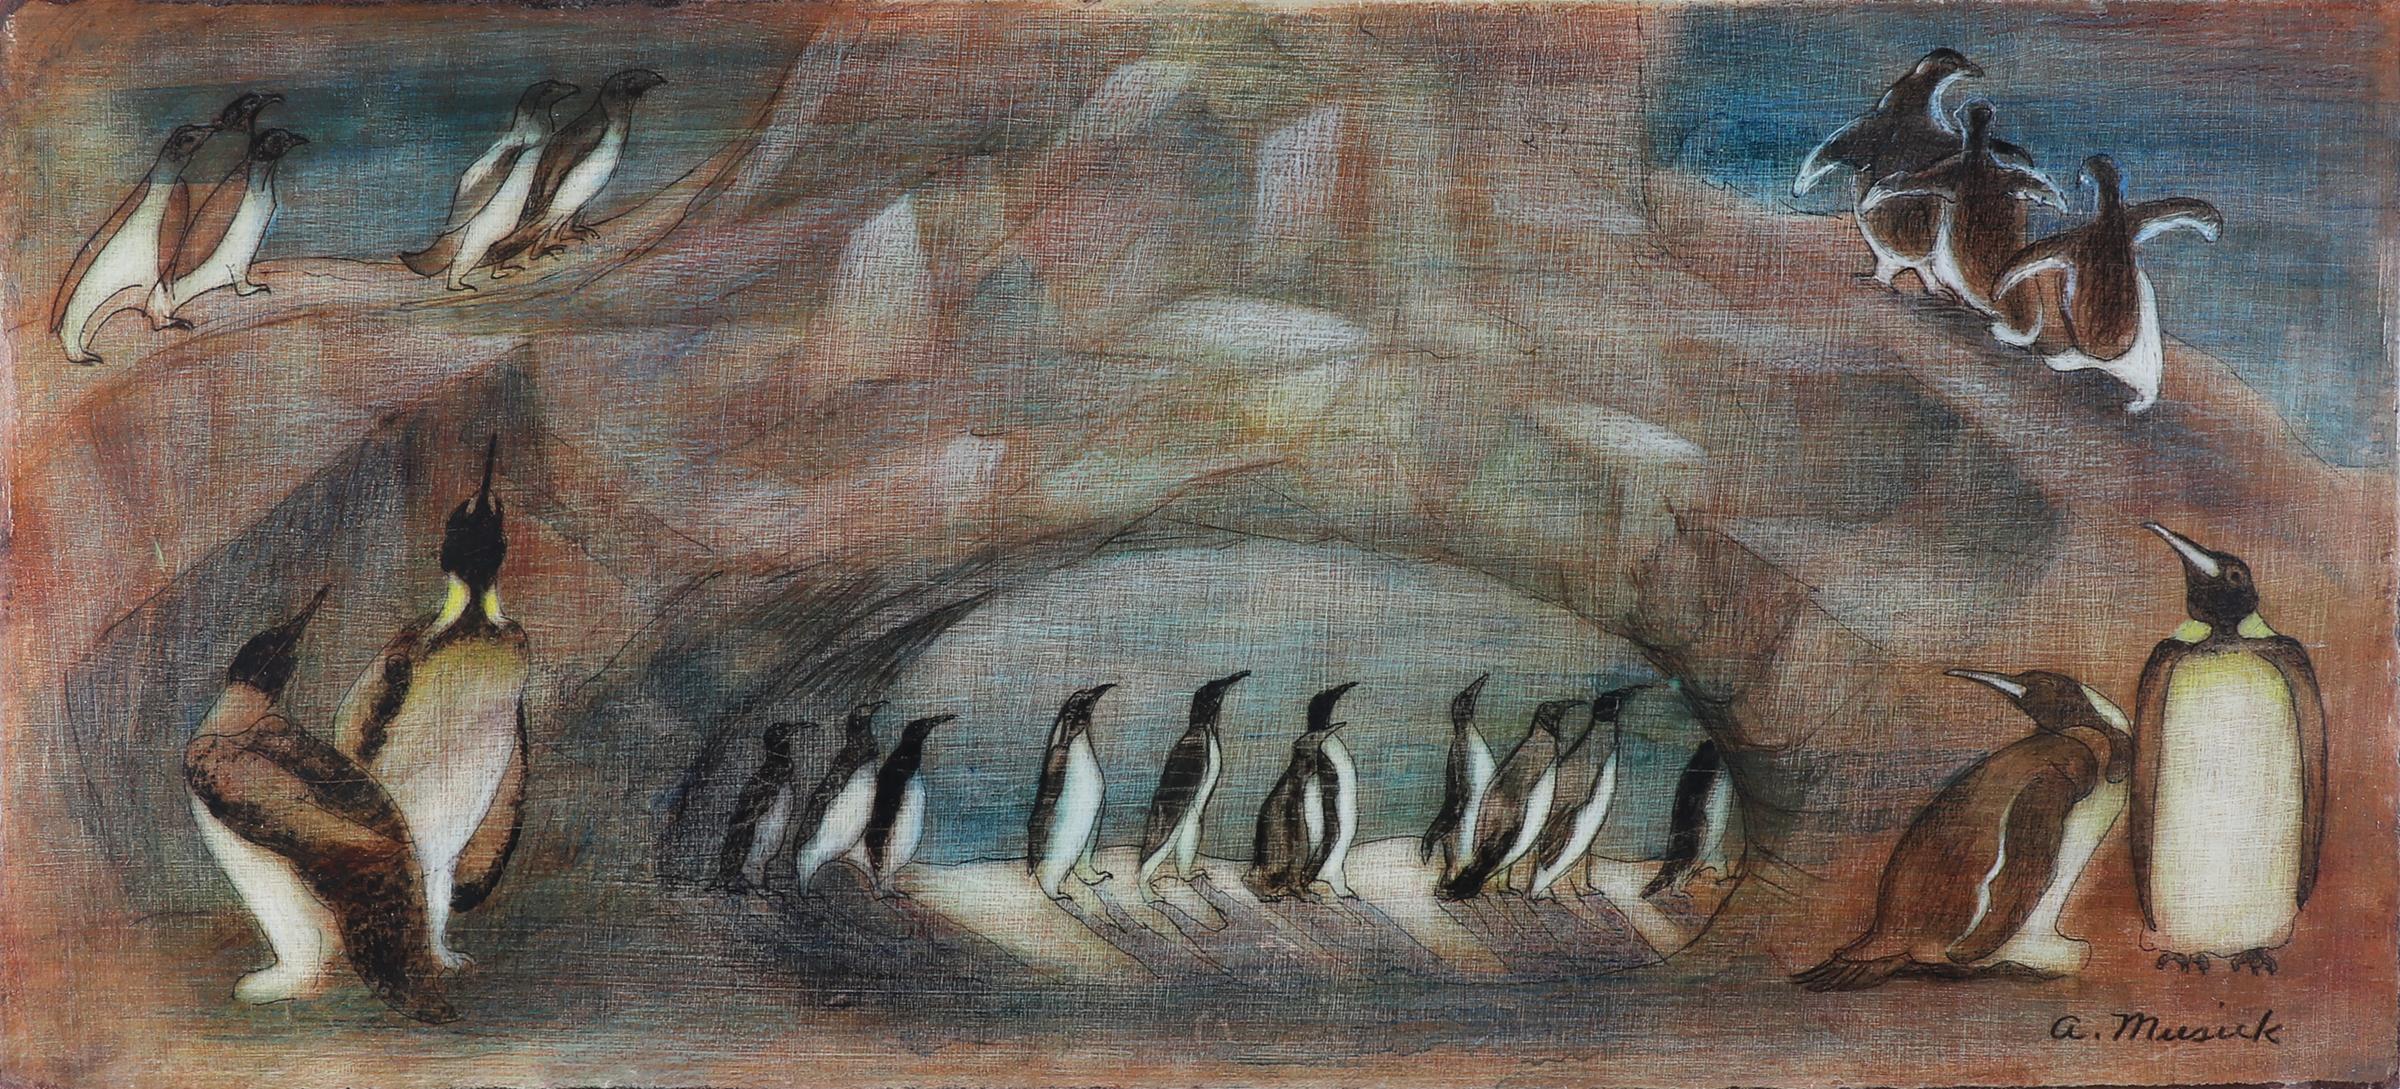 Peinture Tempera moderniste américaine, Pingouins dans un paysage enneigé, bleu et blanc - Painting de Archie Musick